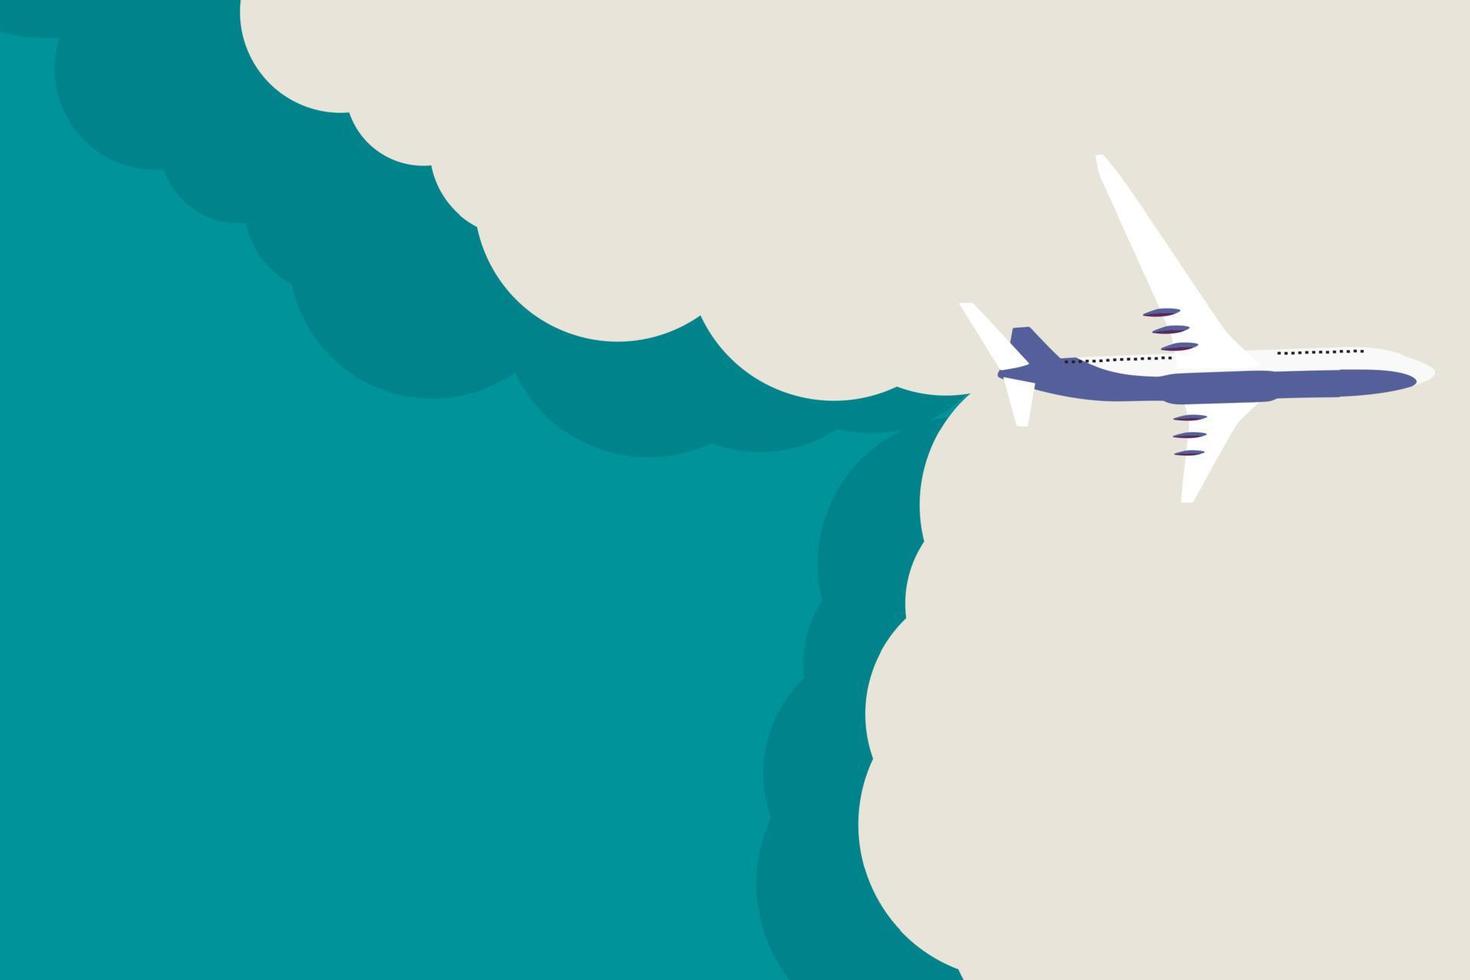 reis achtergrond met vliegtuig en lucht met cloud. vector illustratie